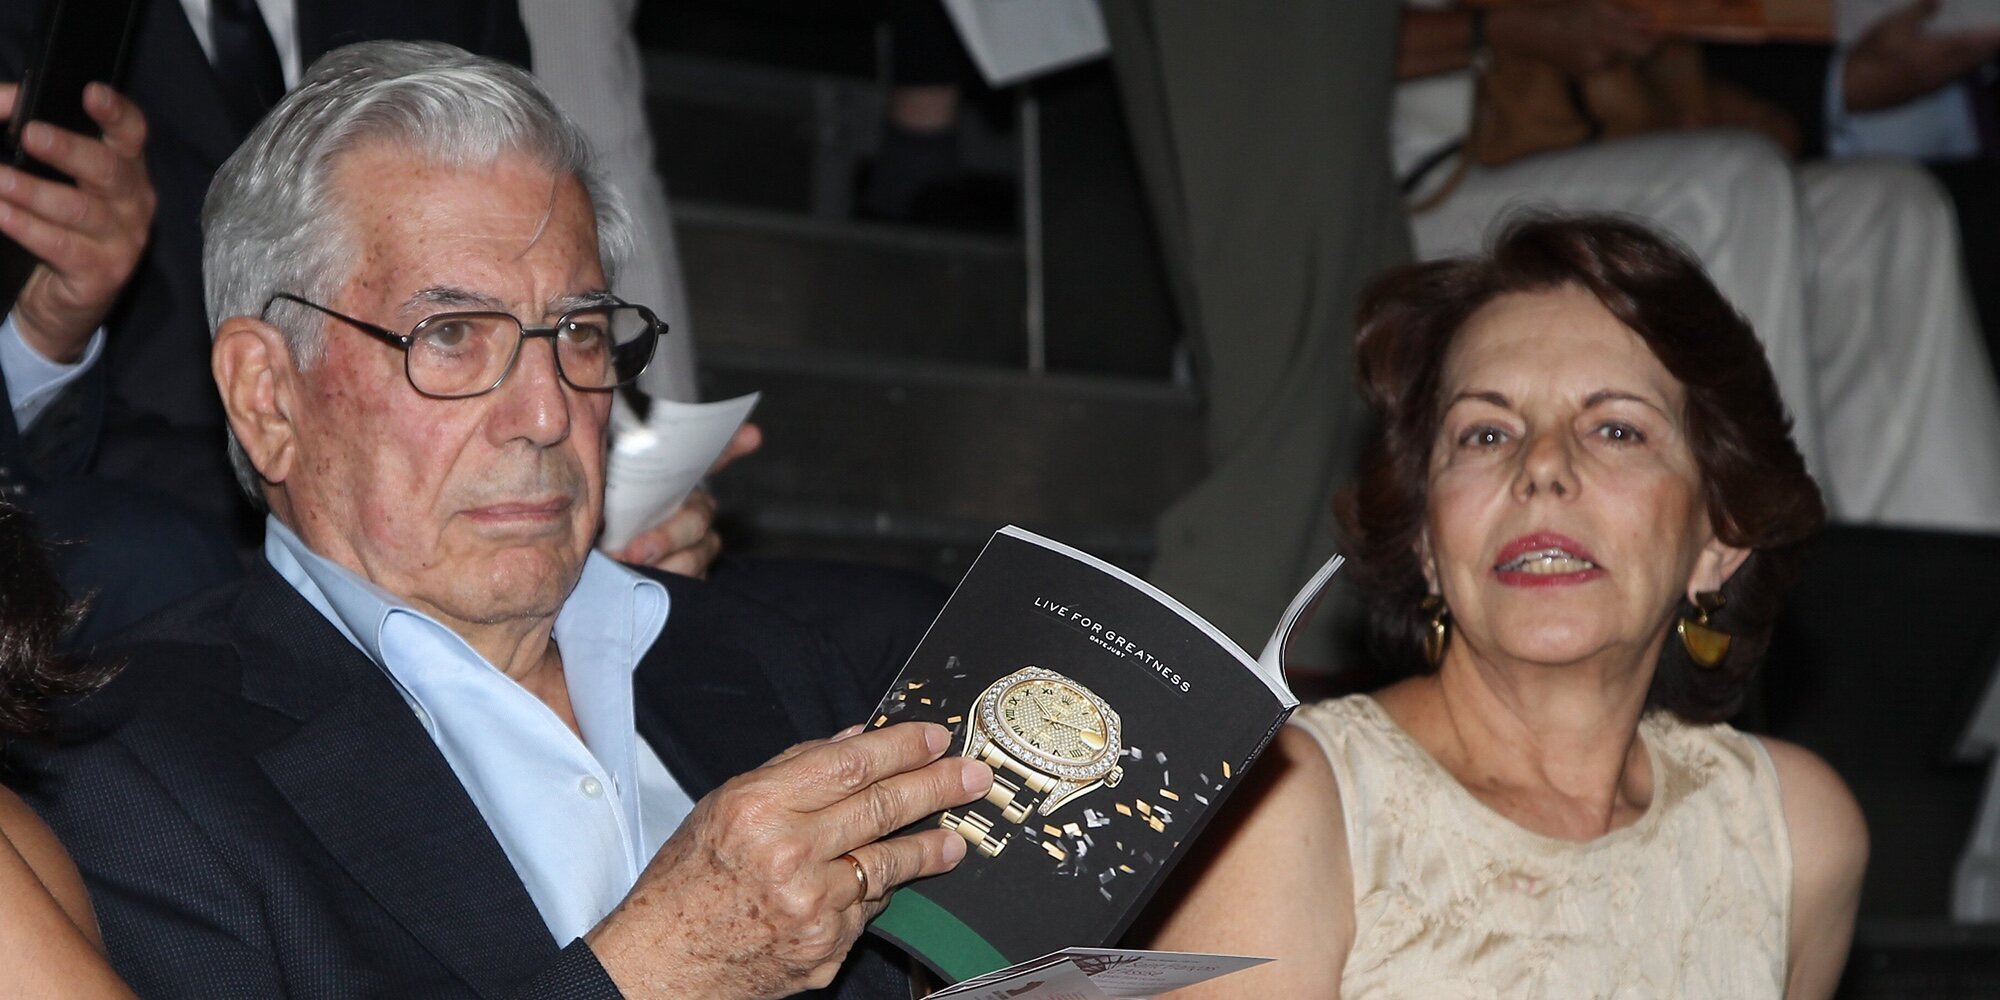 El encuentro secreto de Mario Vargas Llosa con su exmujer que podría ser un paso hacia la reconciliación